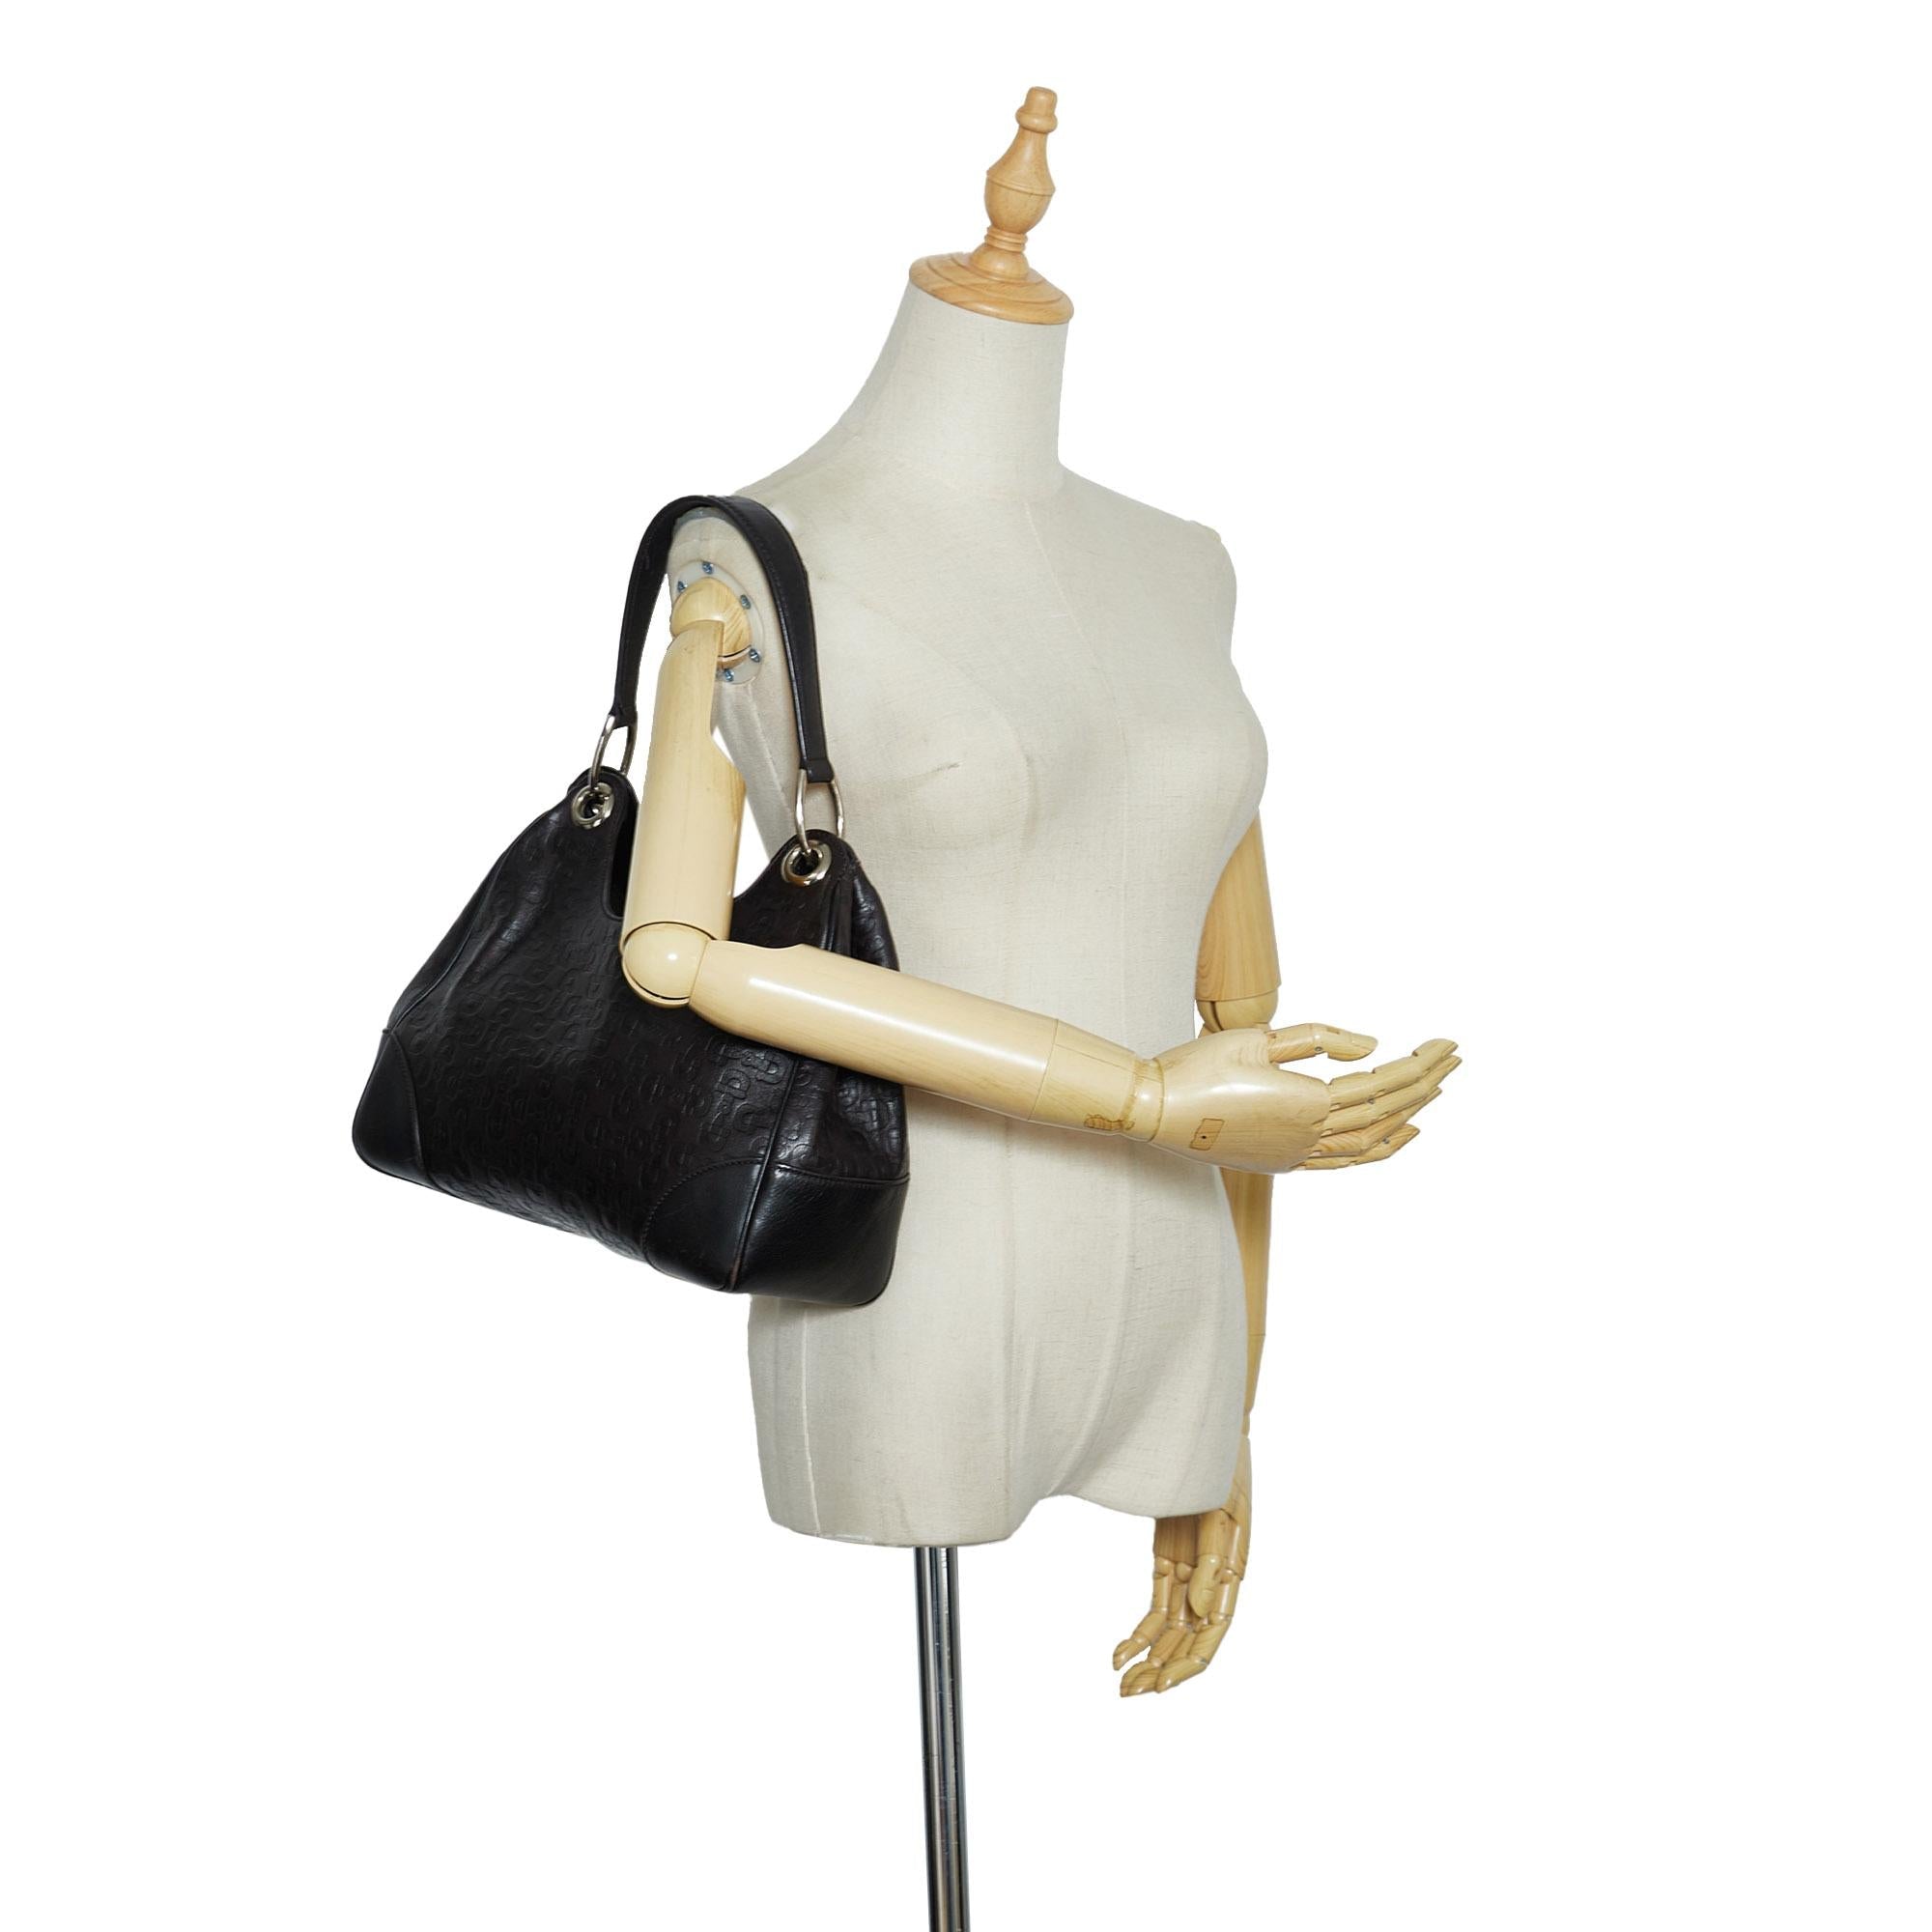 Gucci Horsebit Embossed Leather Shoulder Bag